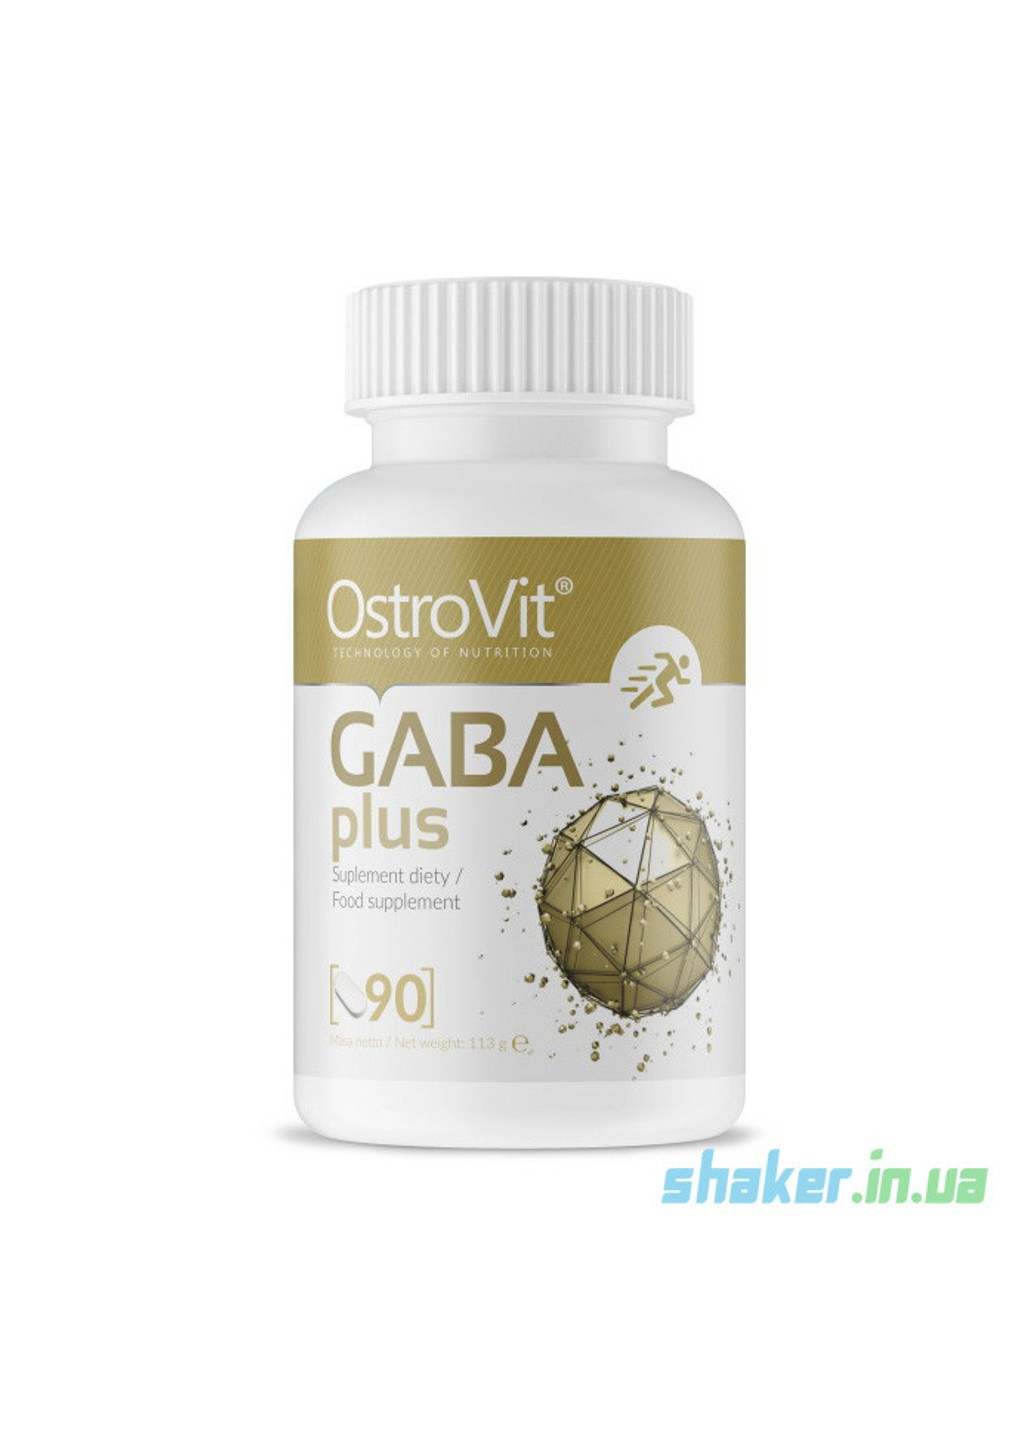 ГАМК Gaba Plus 750 мг (90 таблеток) острови гамма-аміномасляна кислота Ostrovit (255362713)